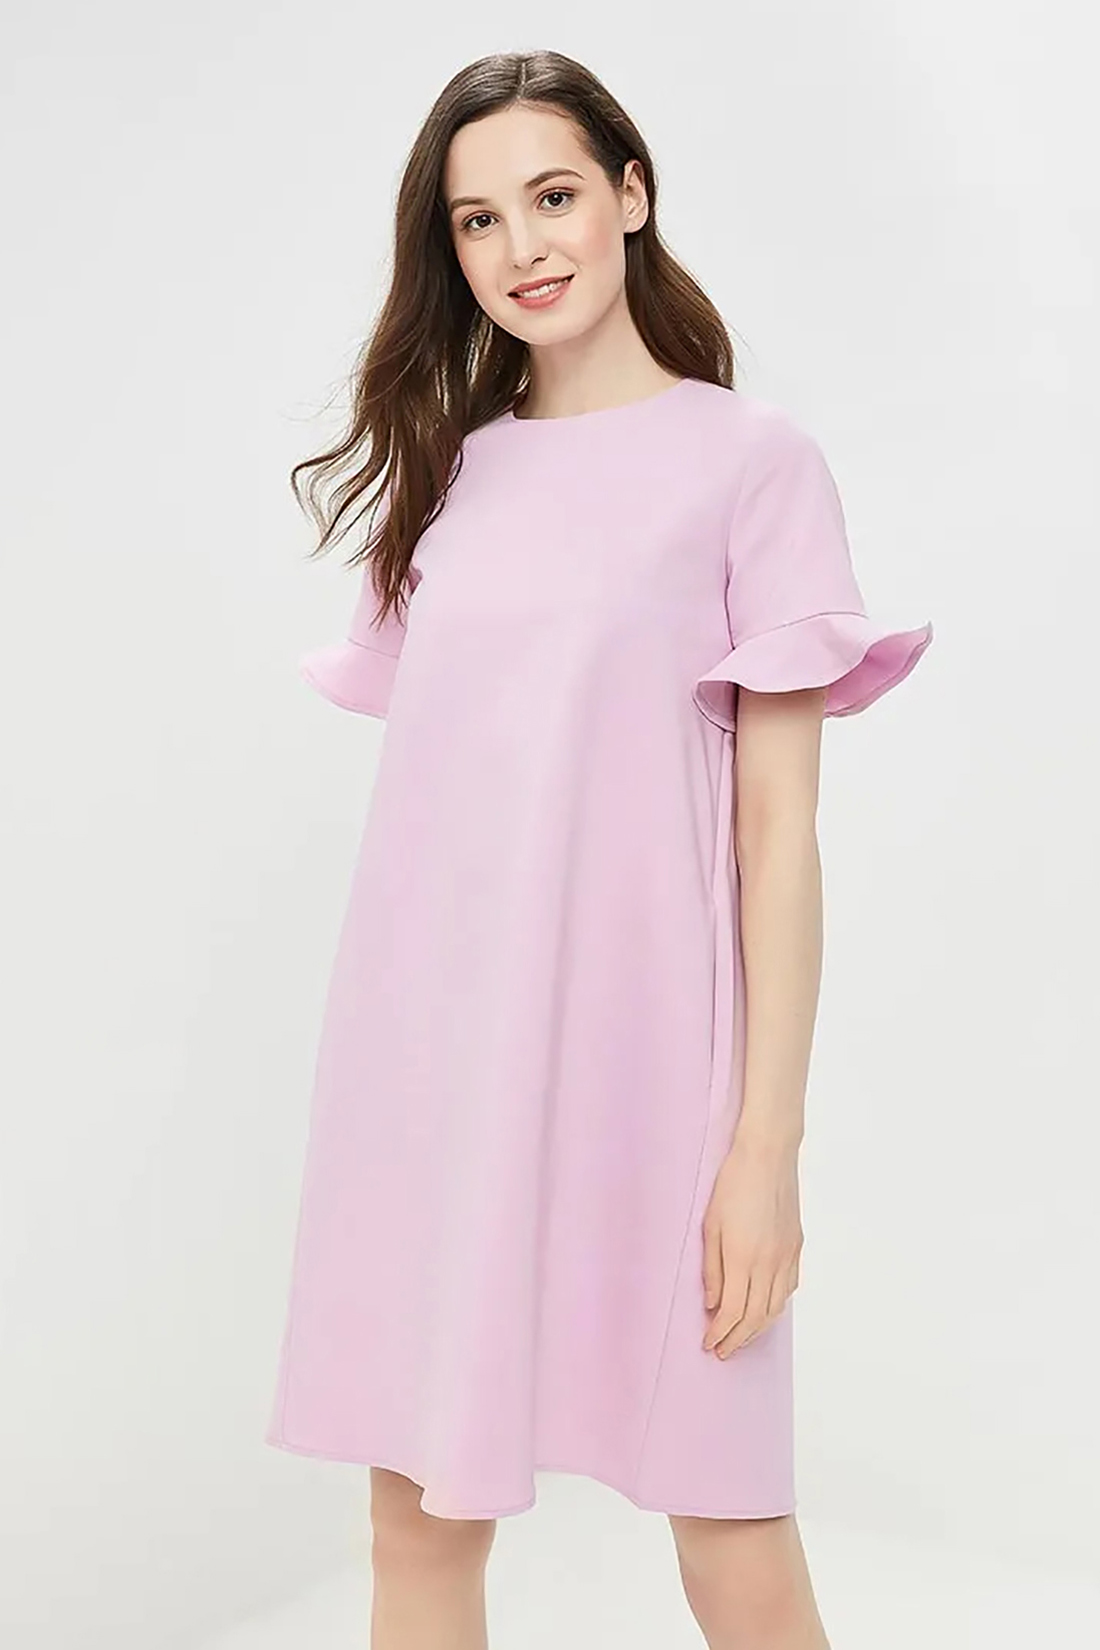 Платье с рюшами и бантовой складкой (арт. baon B459018), размер XL, цвет фиолетовый Платье с рюшами и бантовой складкой (арт. baon B459018) - фото 3